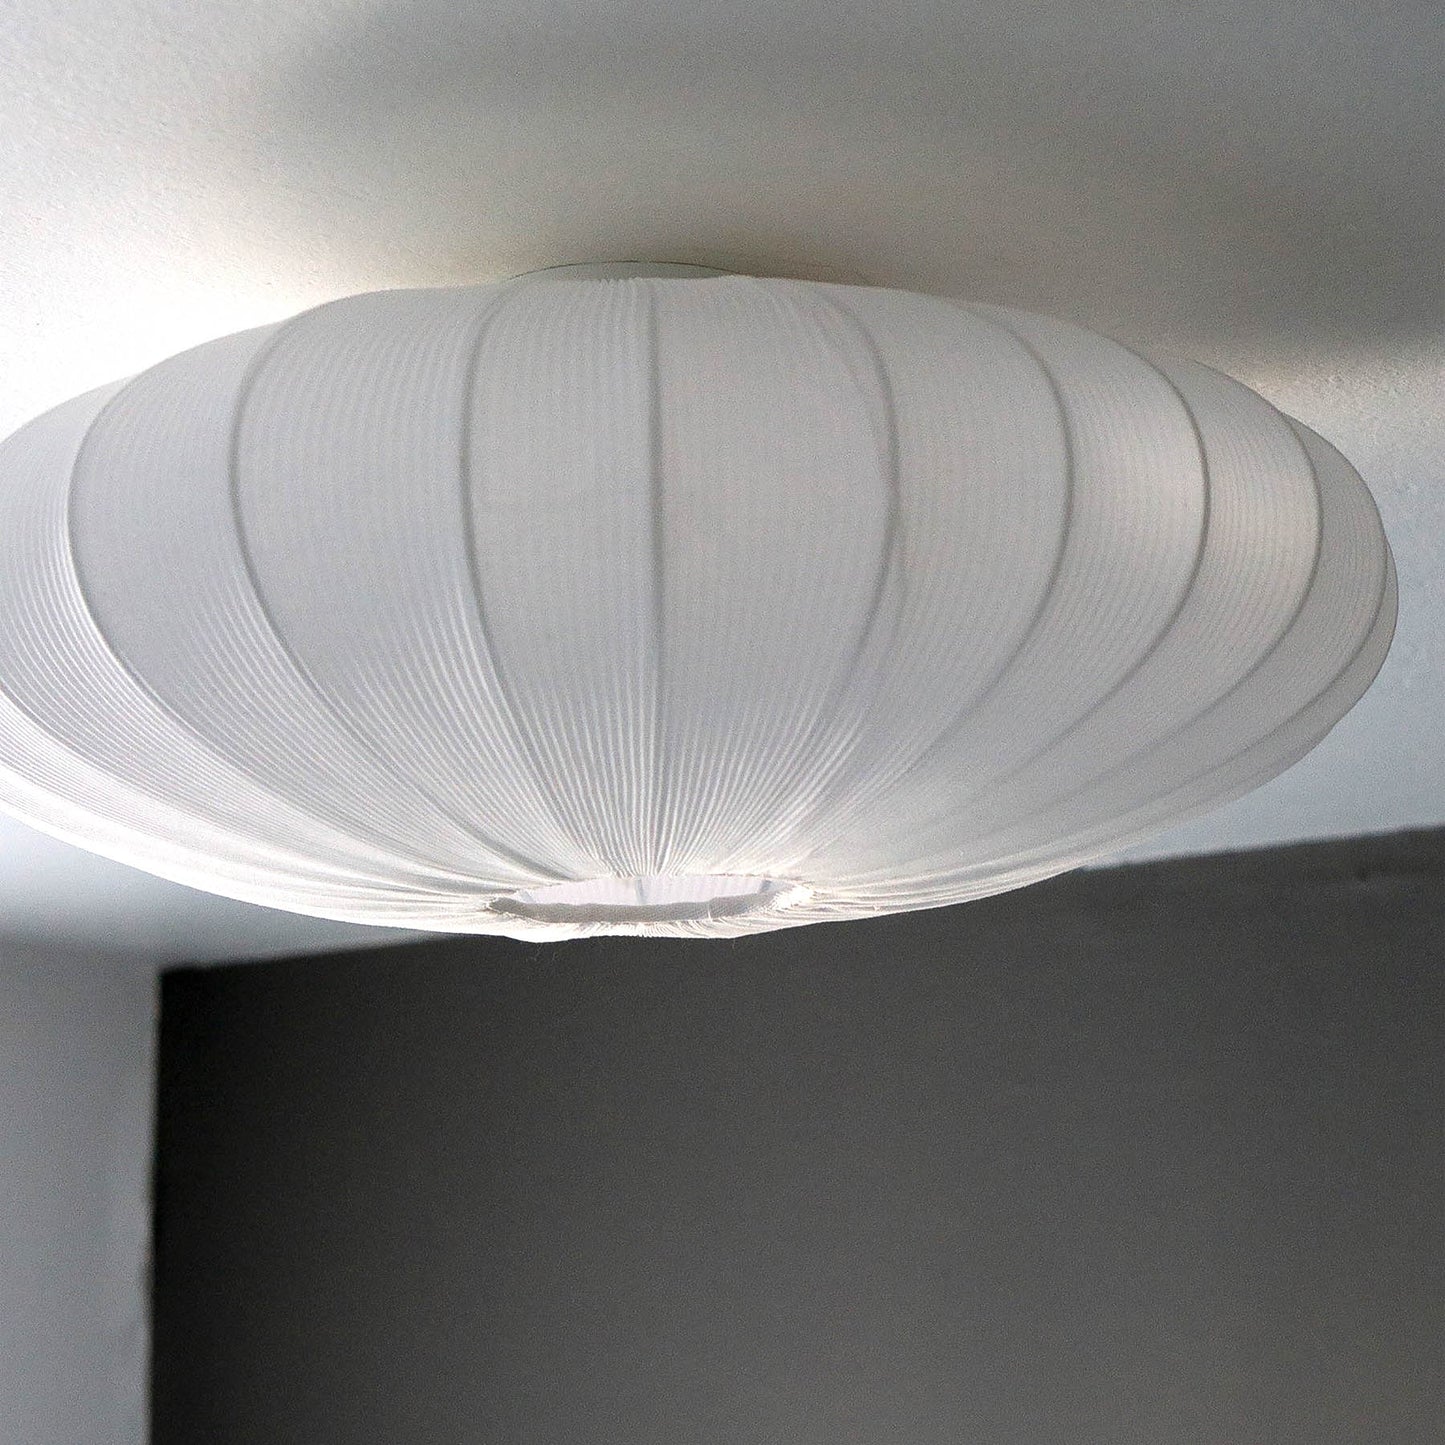 Mamsell taklampe på soverom, rund plafond med diameter 65cm trukket i hvit tekstil rundt ramme i hvit metall - Aneta belysning